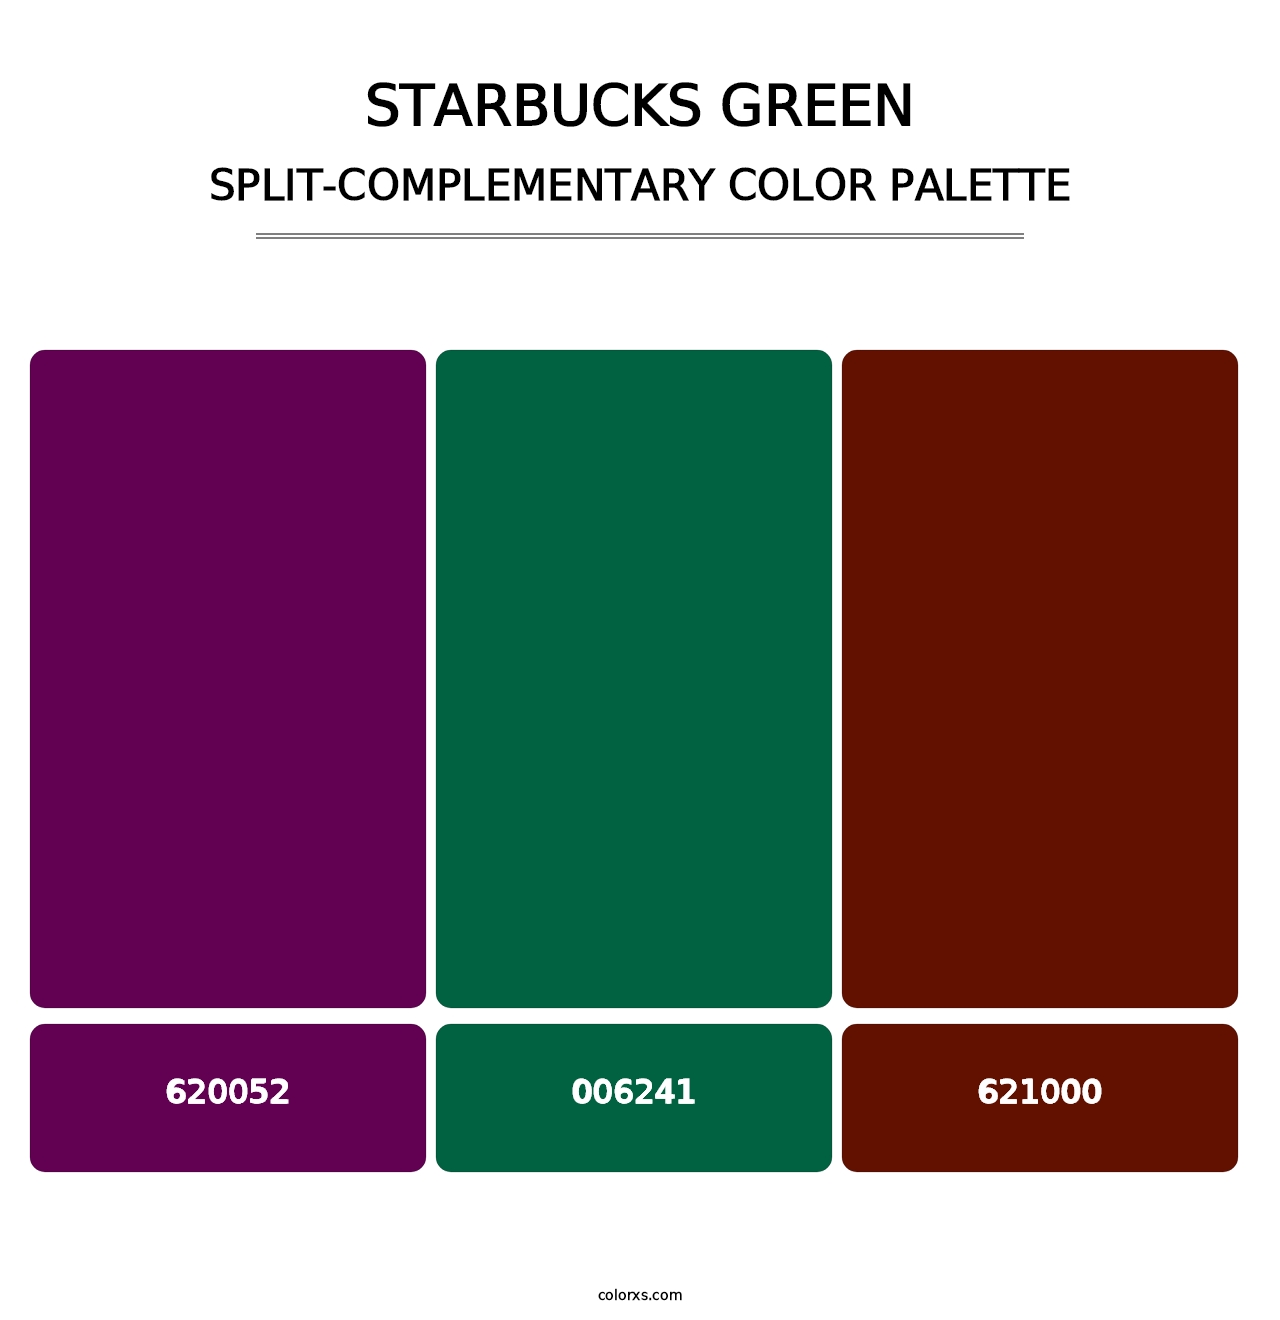 Starbucks Green - Split-Complementary Color Palette